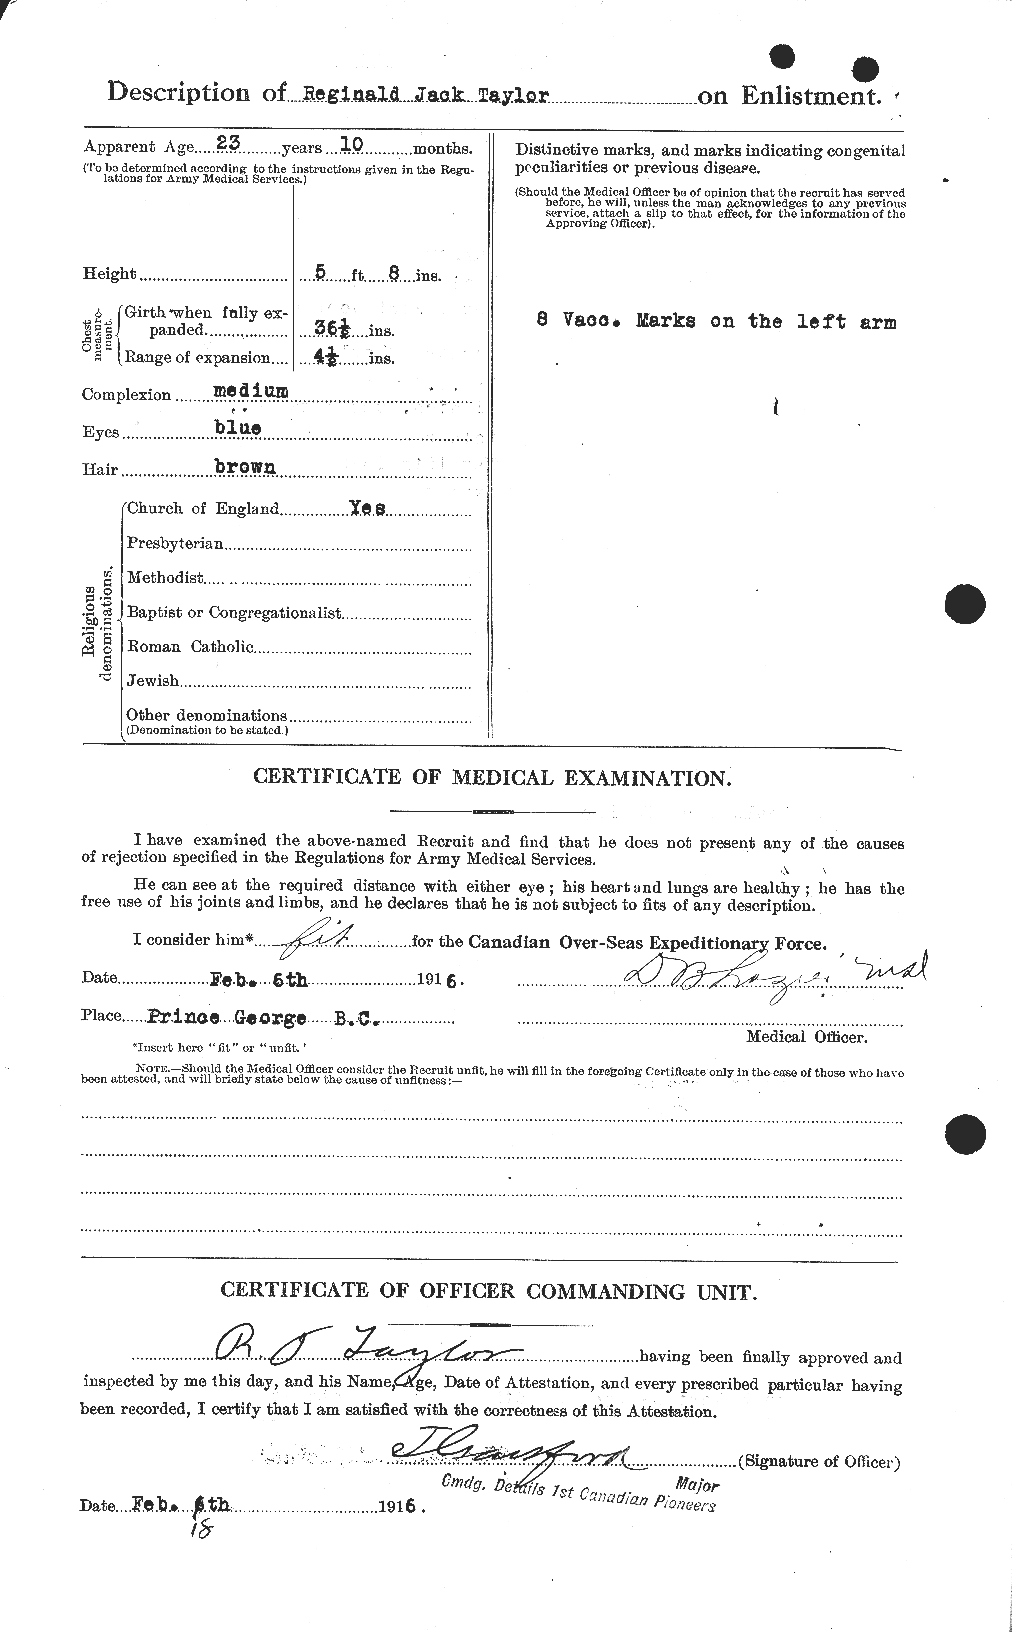 Dossiers du Personnel de la Première Guerre mondiale - CEC 627804b